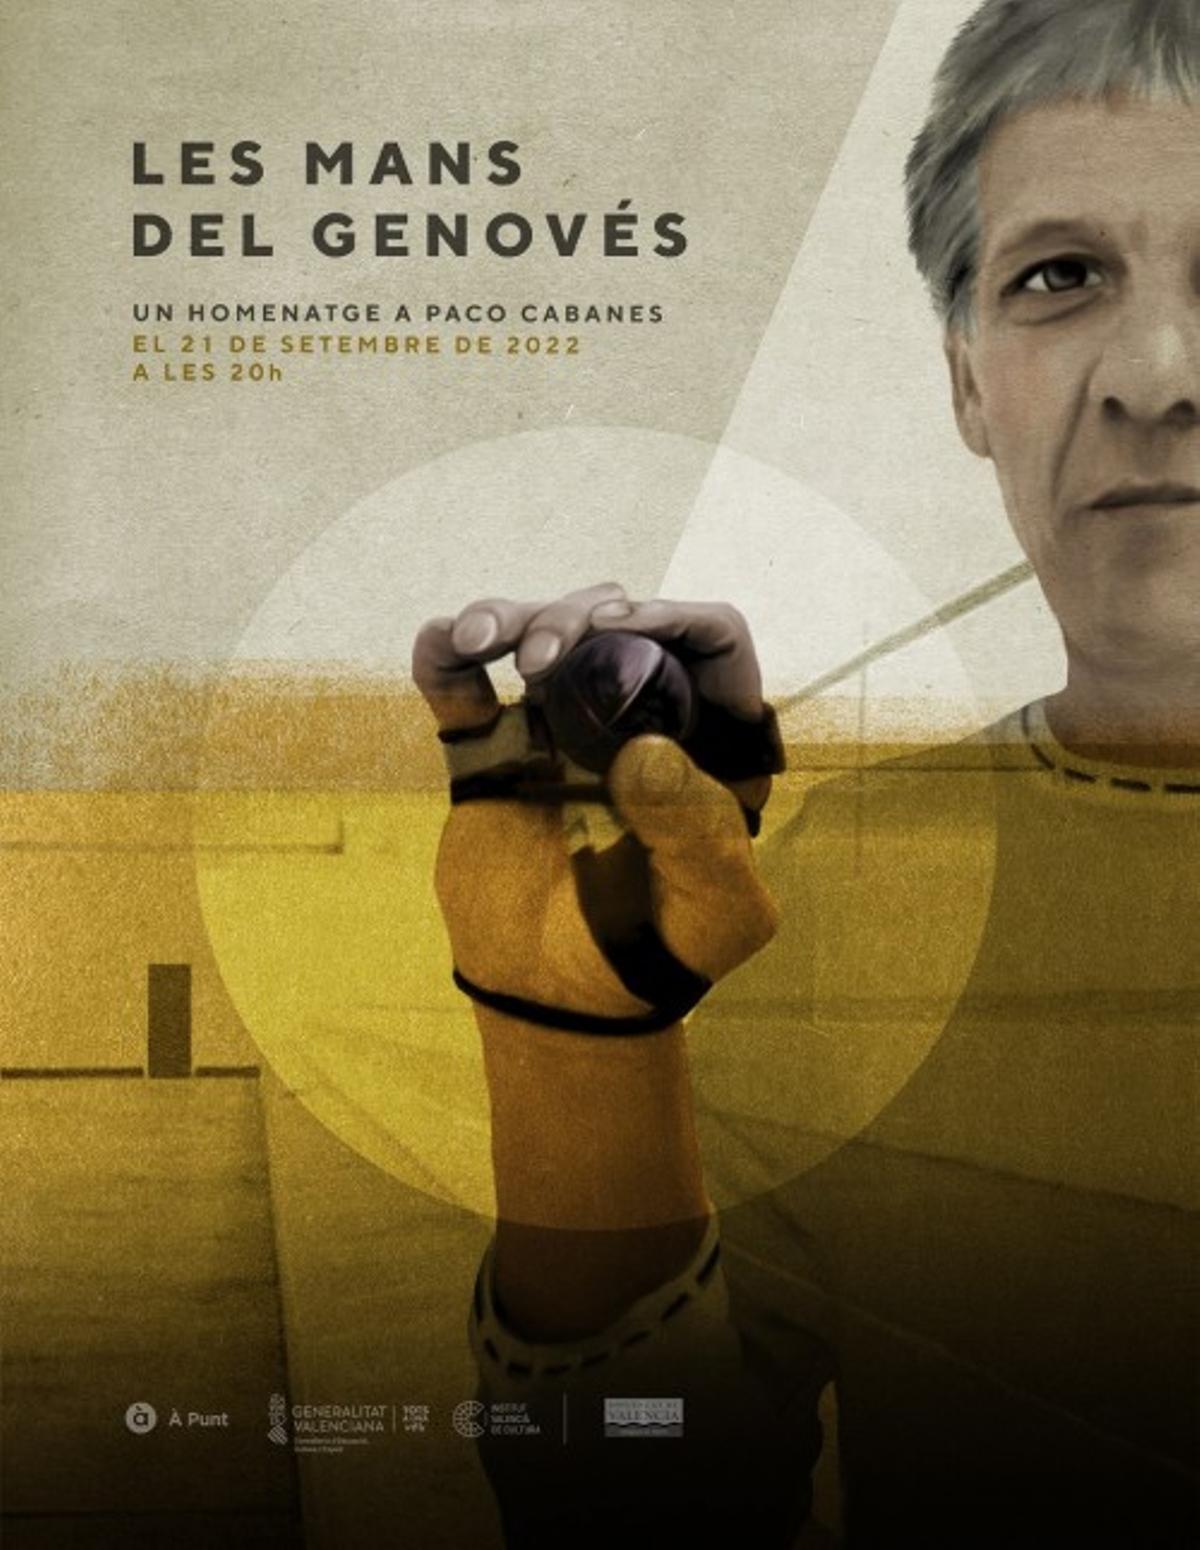 L'homenatge a El Genovés se celebra hui a les 20 hores al Teatre Principal de València.